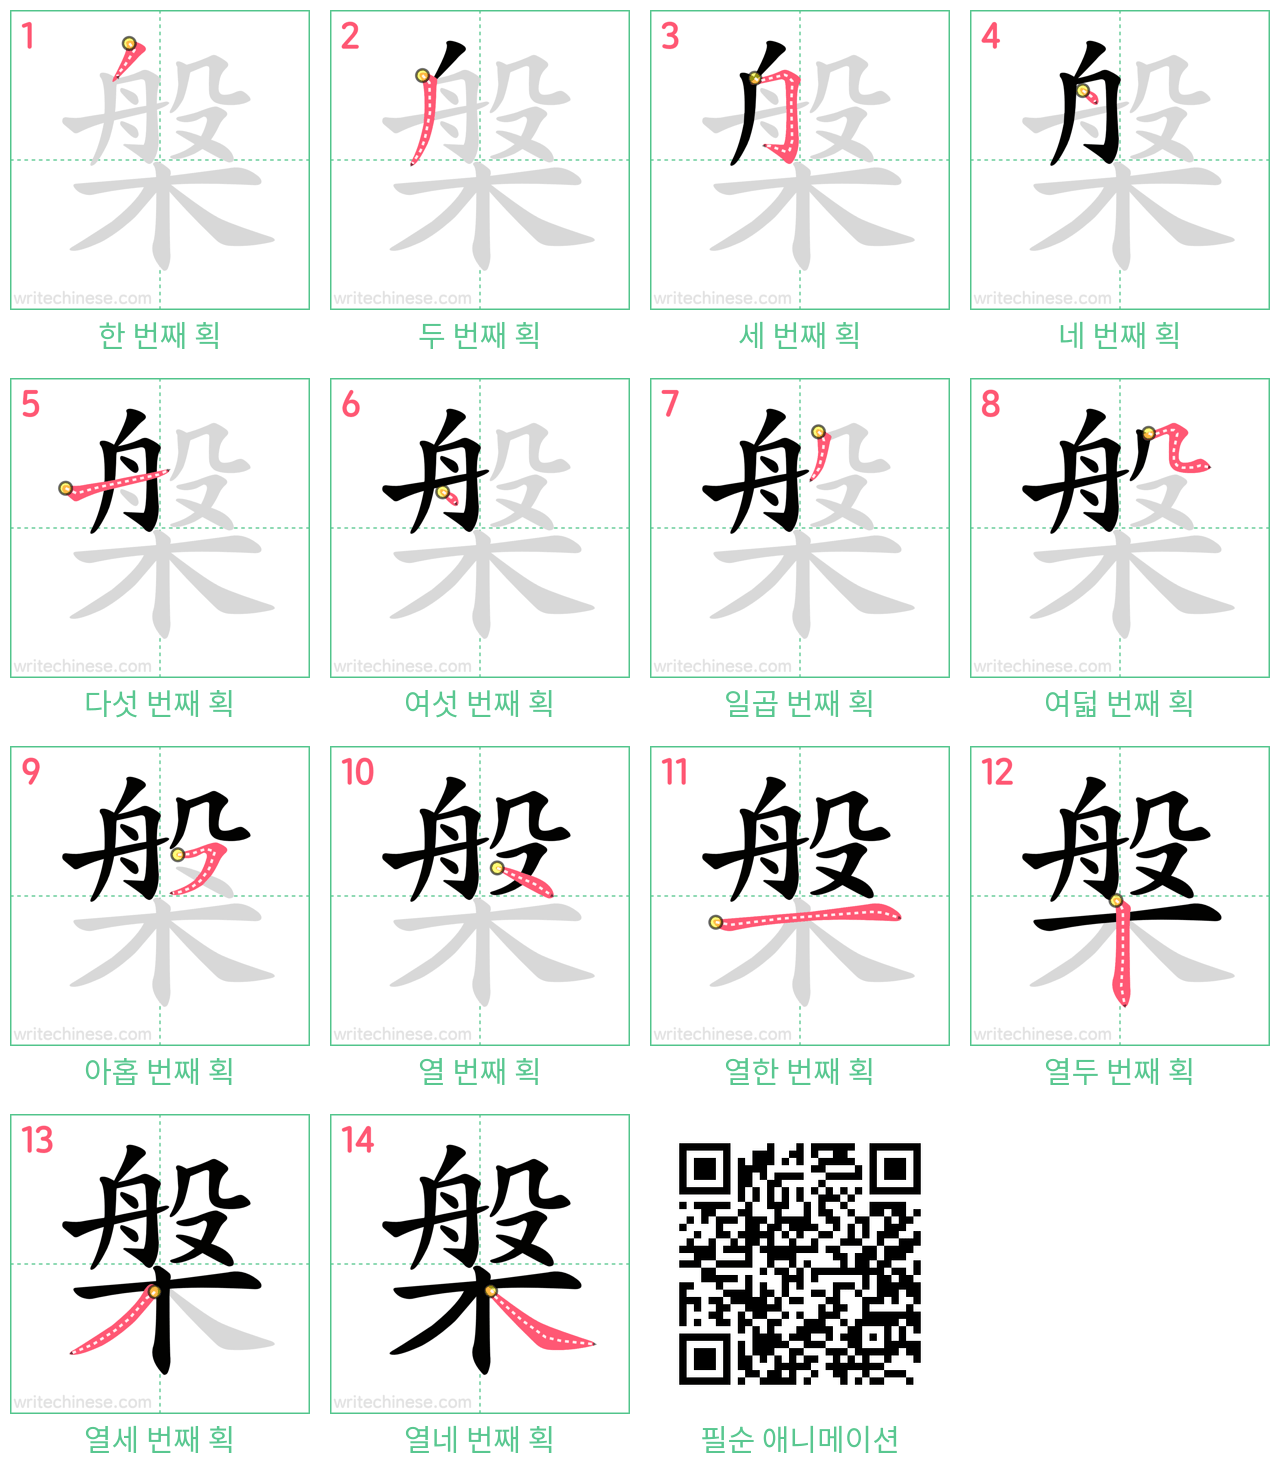 槃 step-by-step stroke order diagrams